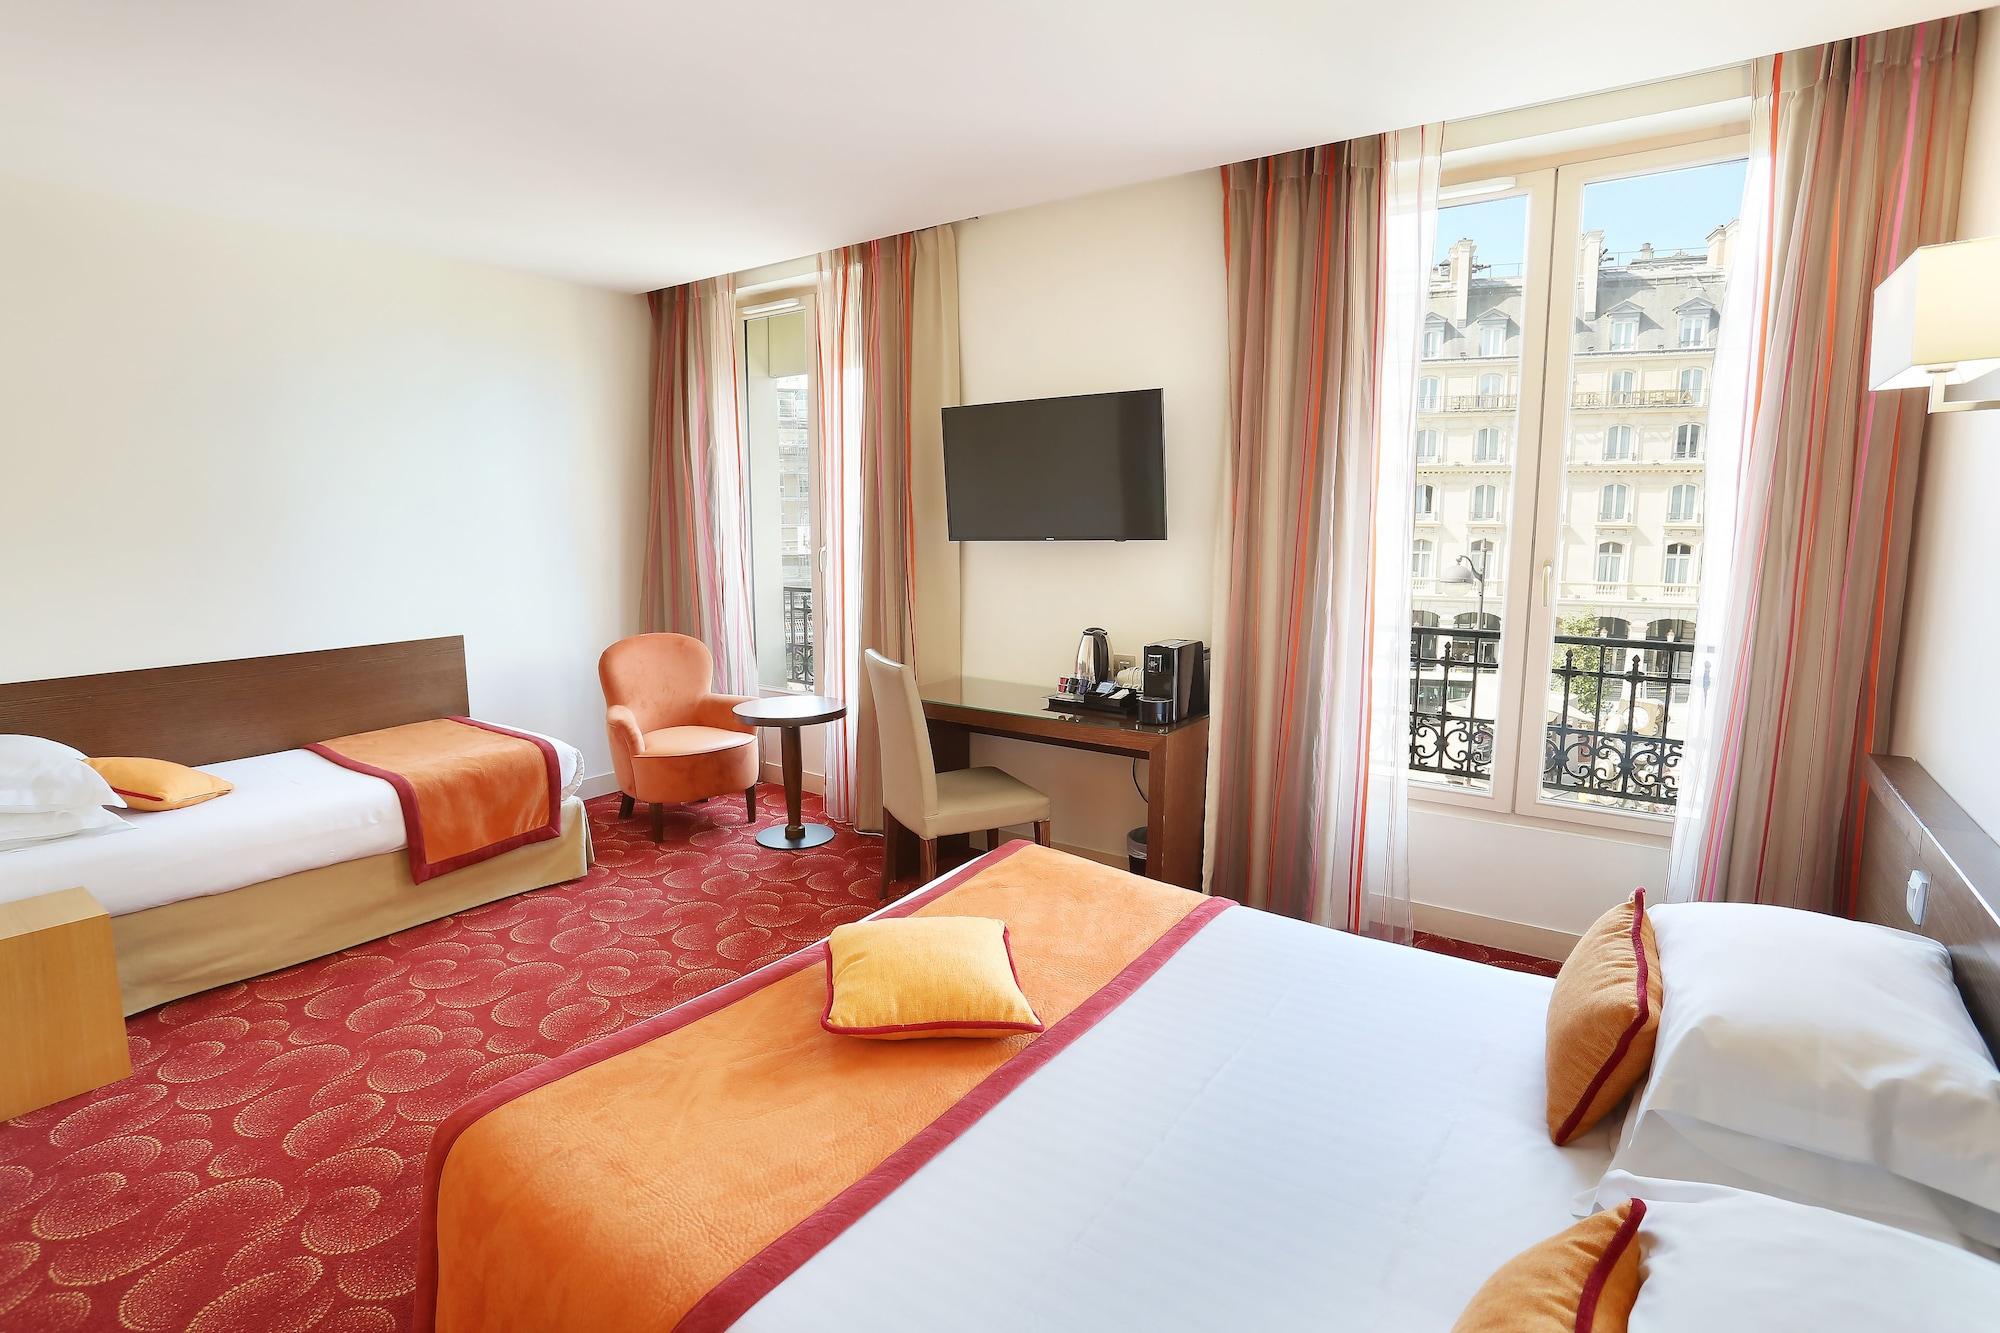 Le Grand Hotel De Normandie Paris Luaran gambar